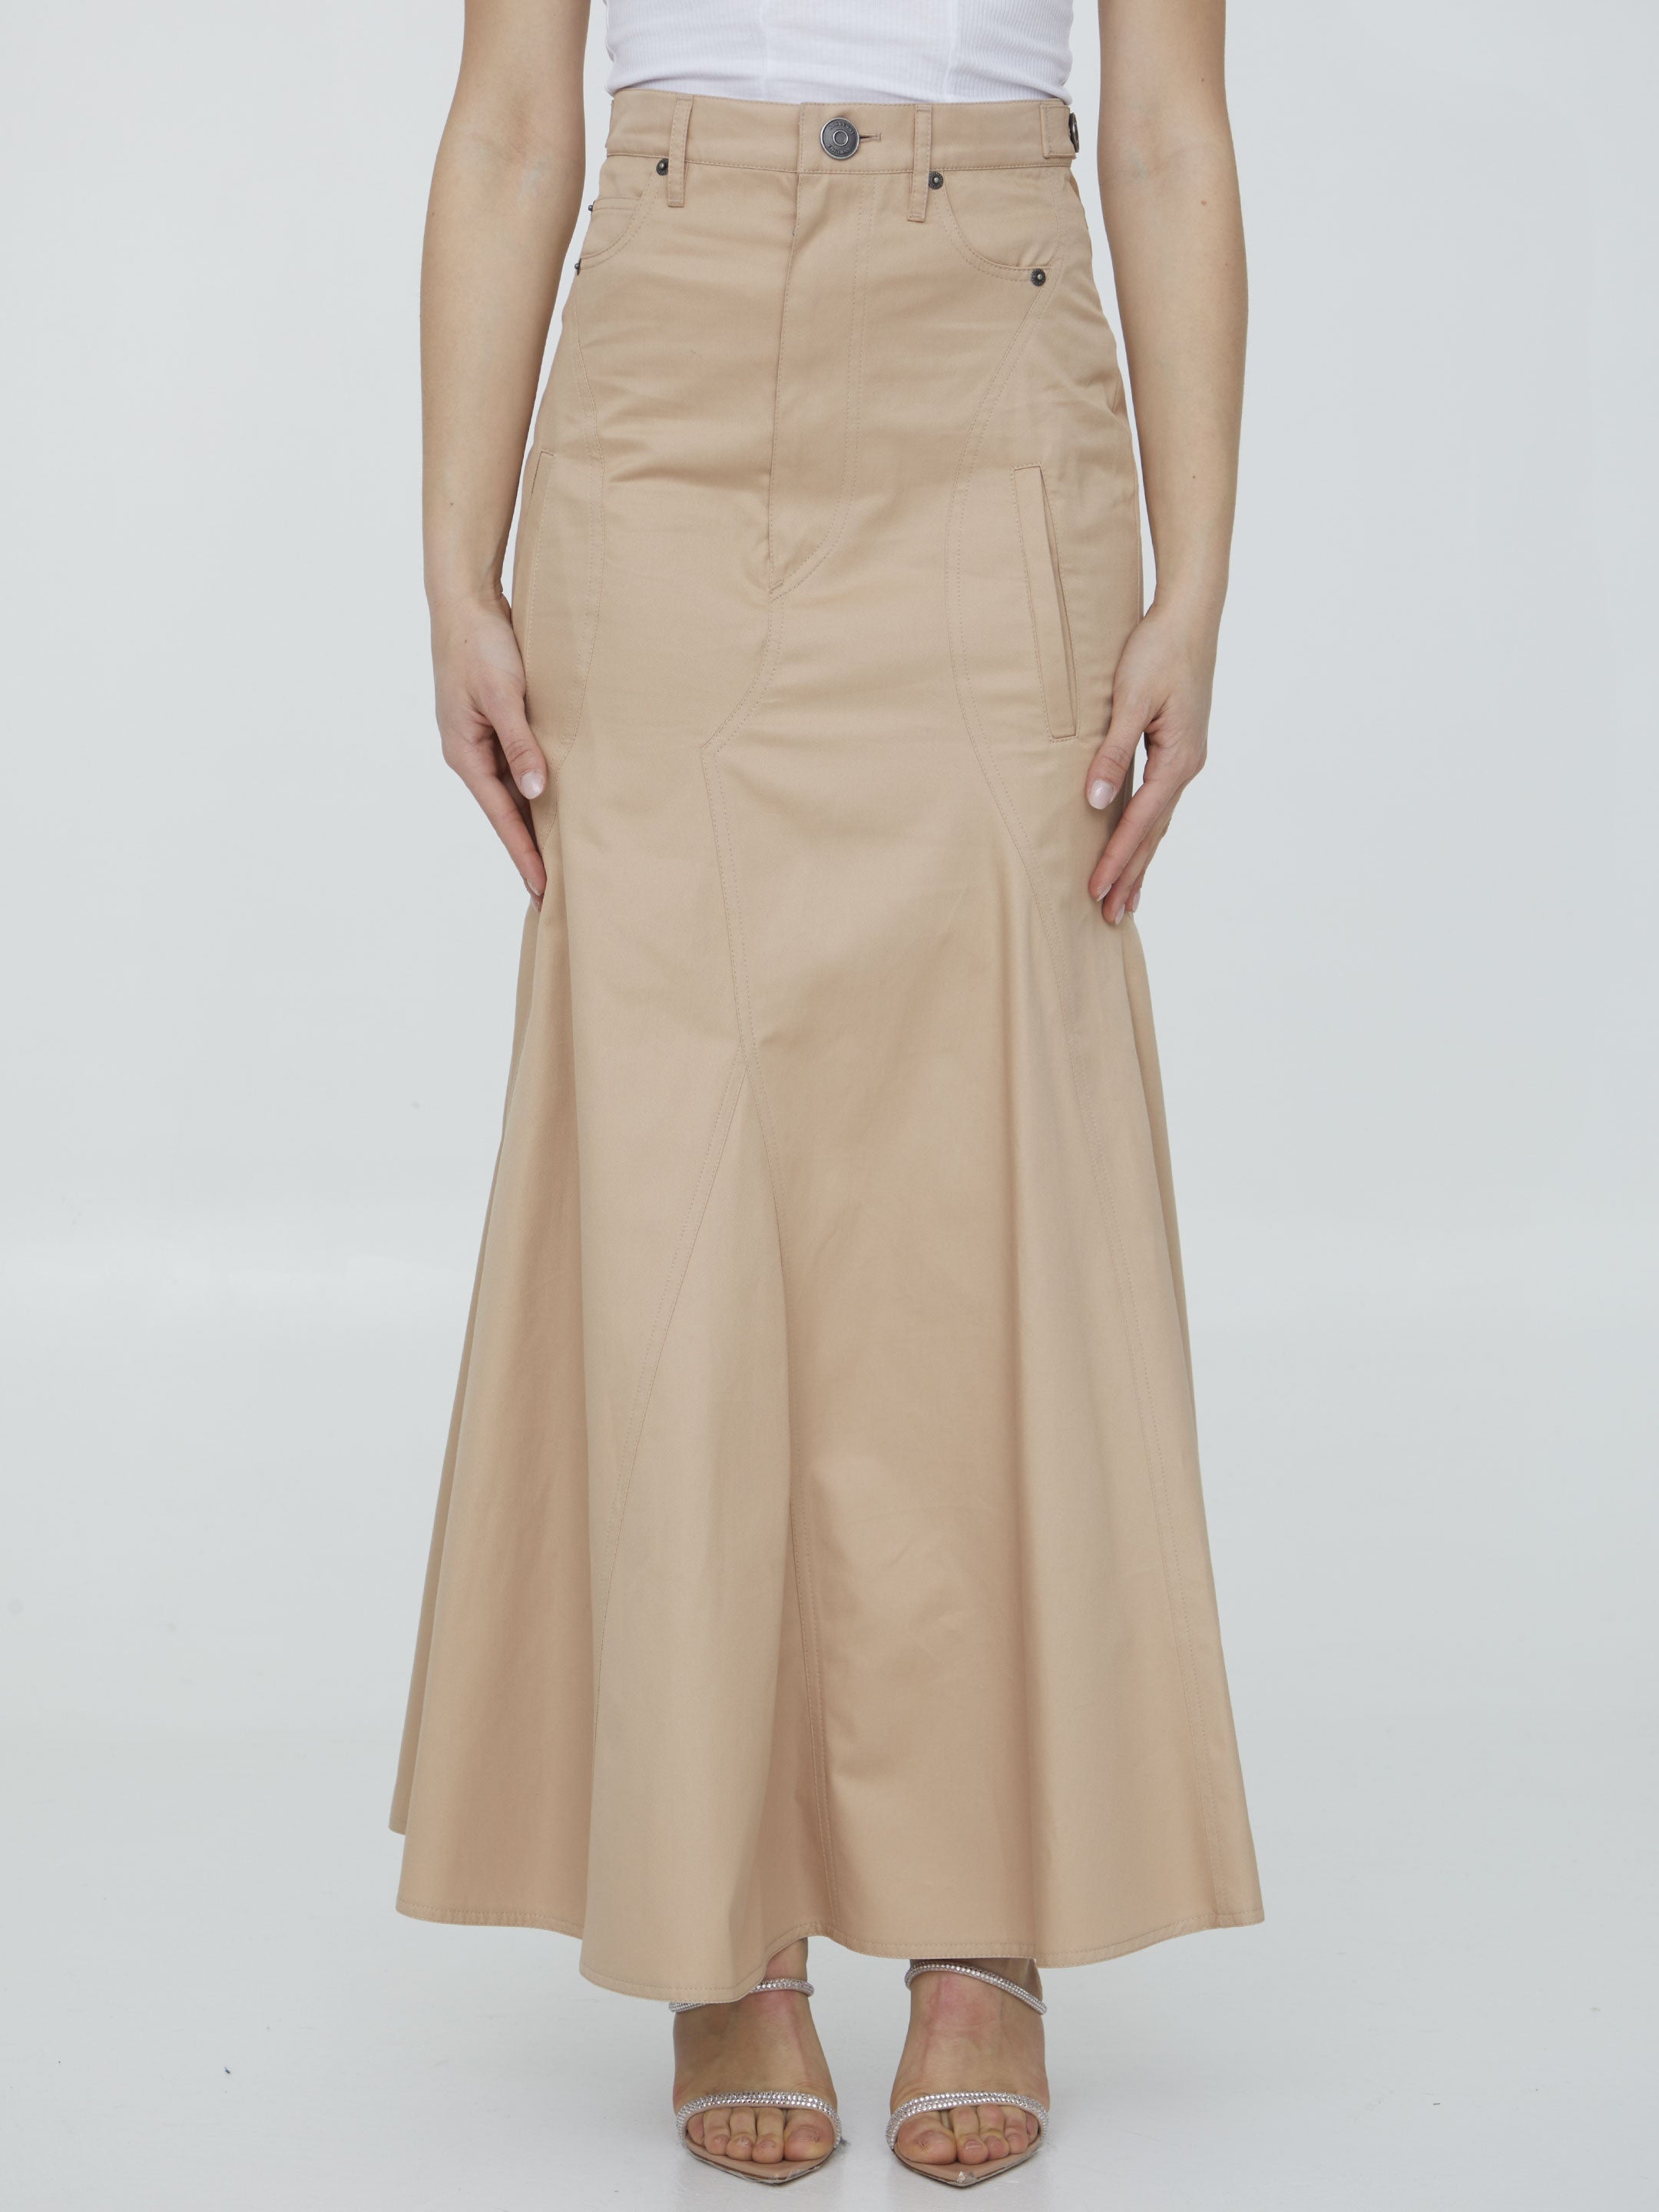 Cotton gabardine long skirt